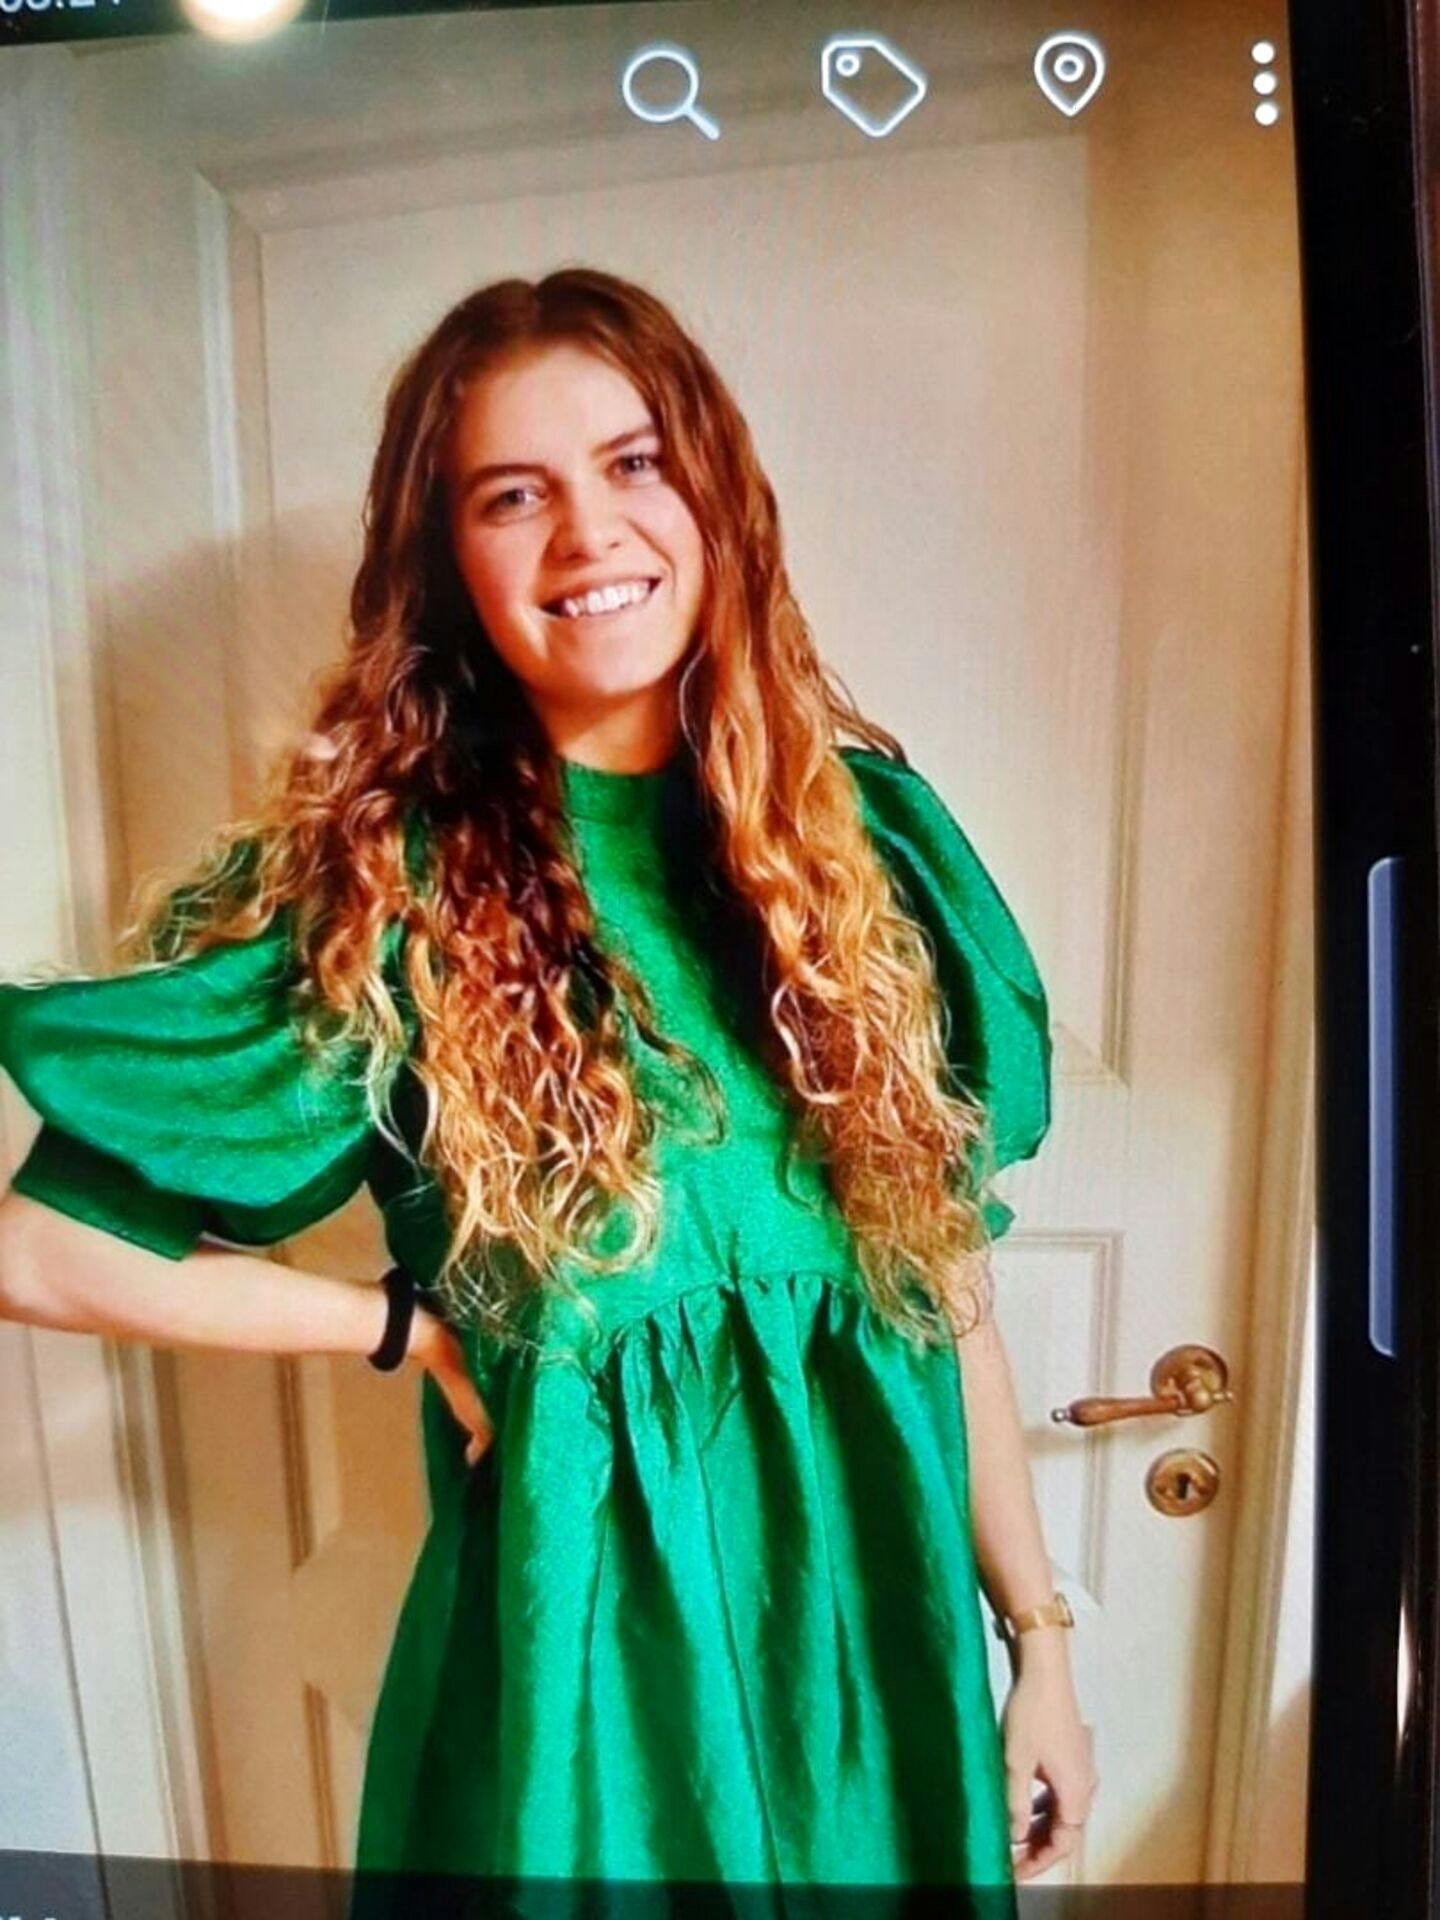 22-årige Mia Skadhauge Stevn forsvandt efter en bytur i Jomfru Ane Gade i februar sidste år. Hun blev kort tid efter fundet dræbt.
